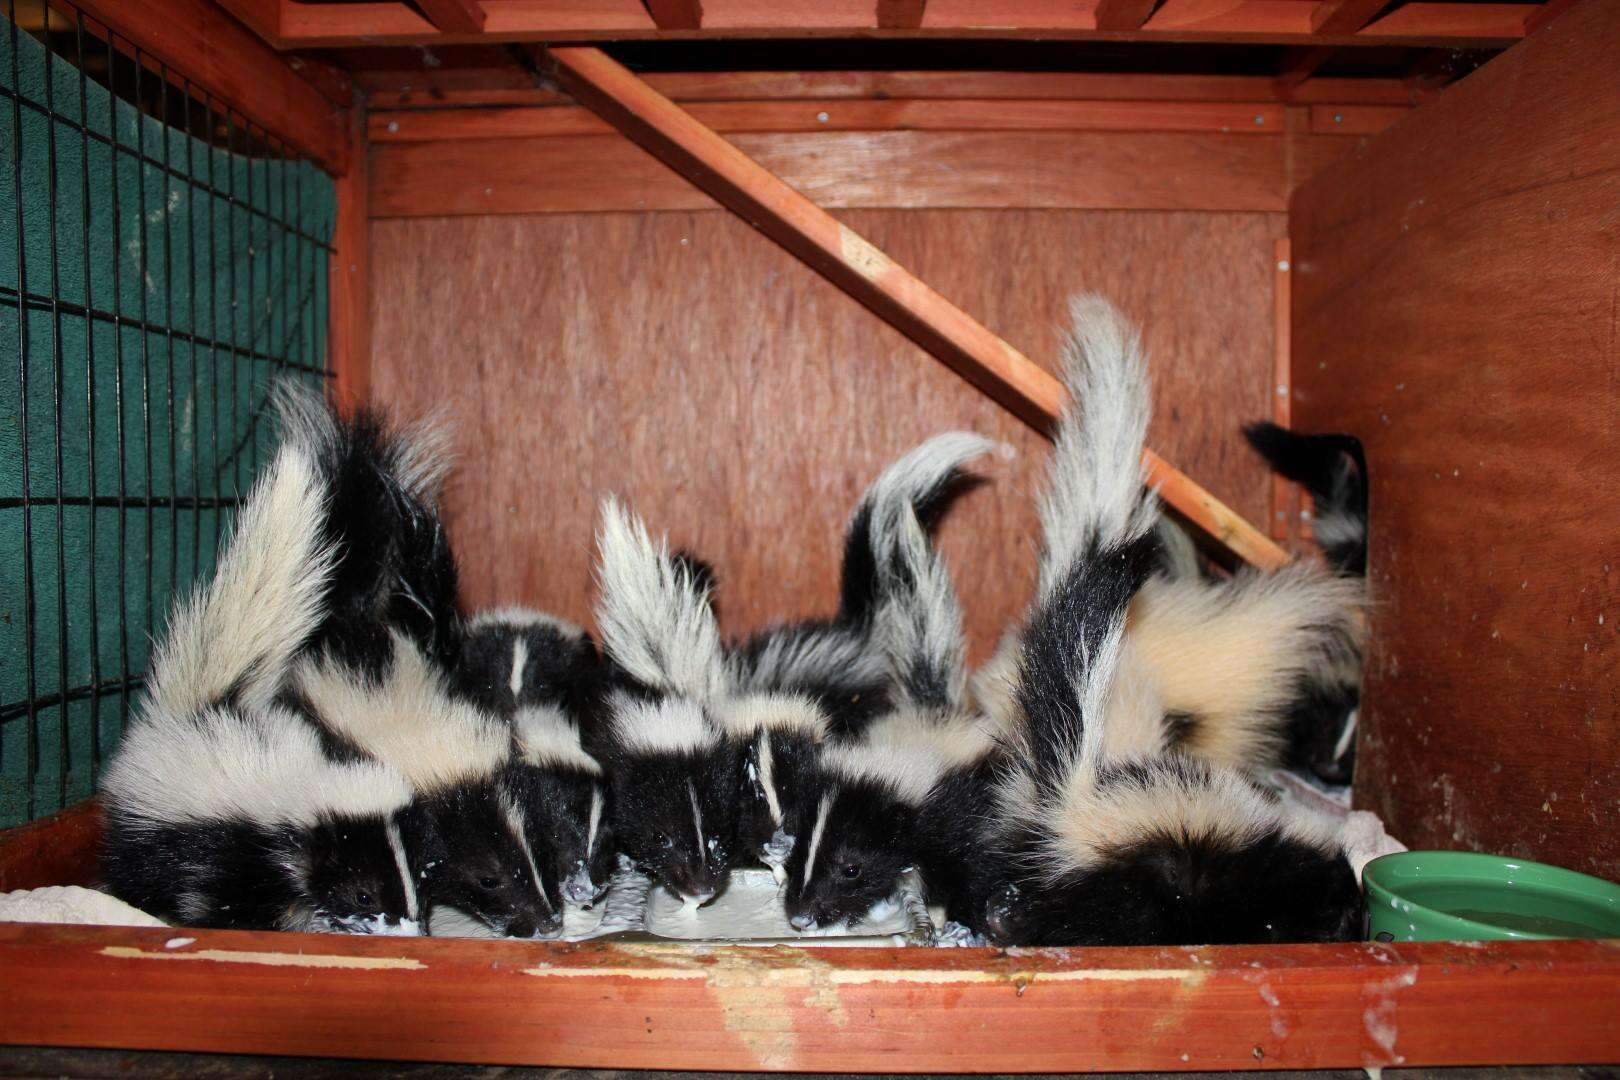 skunk rescue orphans